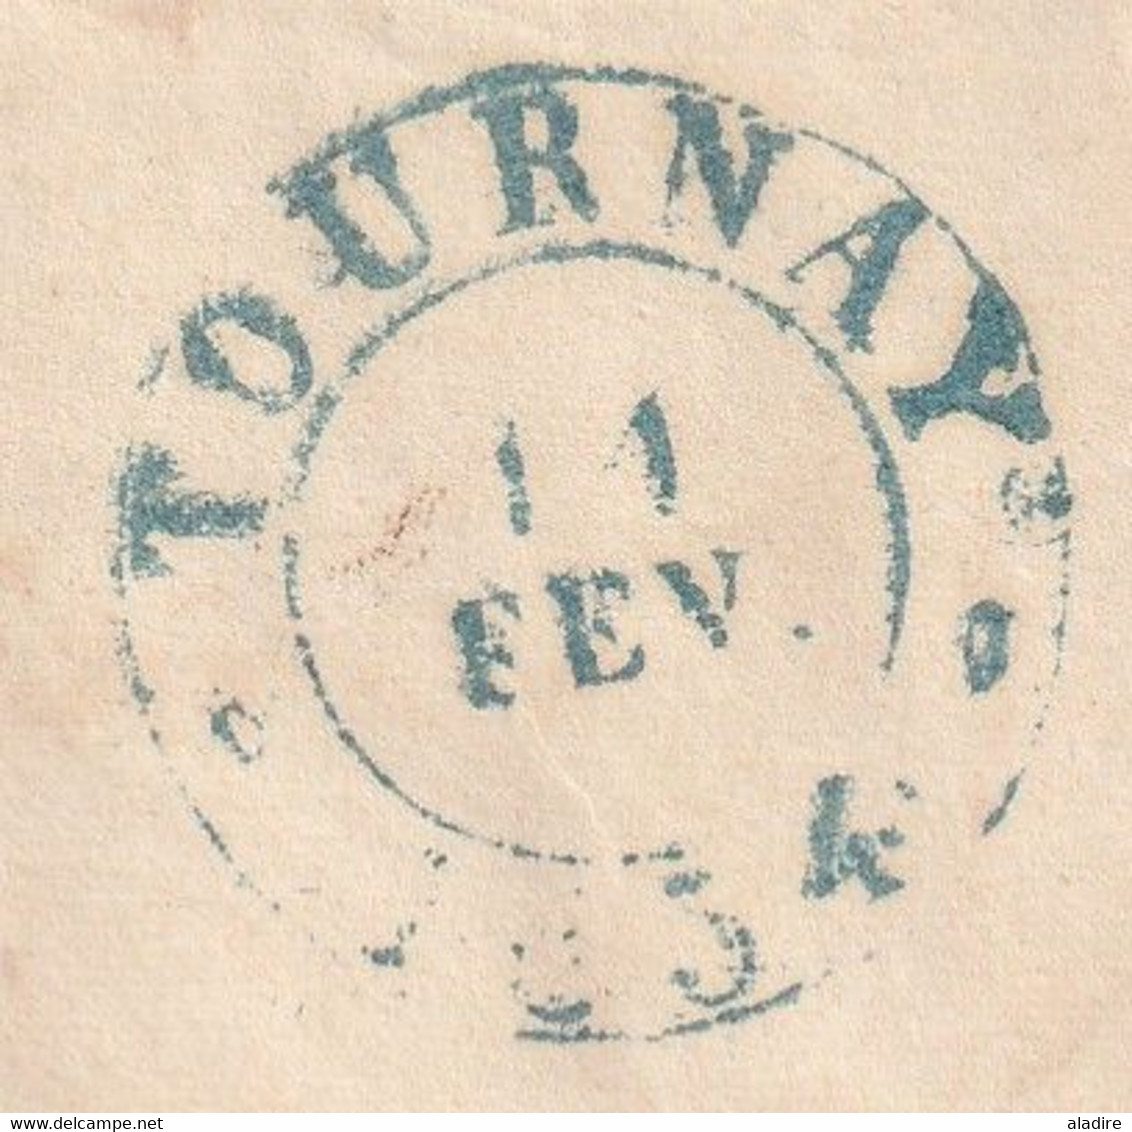 1834 - Enveloppe pliée de PARIS (dateur) vers Tournay Tournai puis Mons, Belgique - taxe 35 !!!